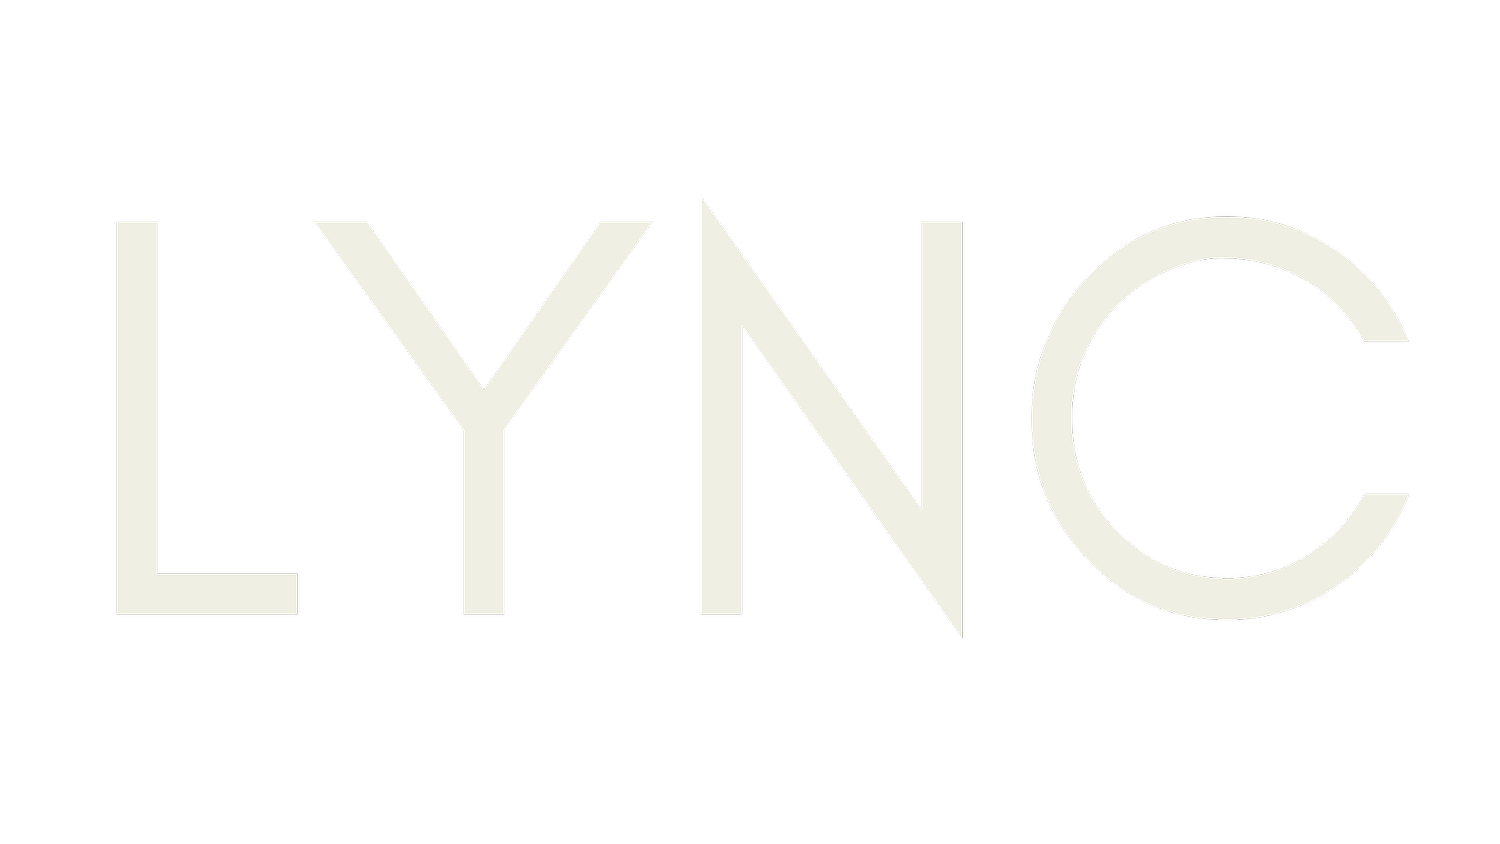 LYNC